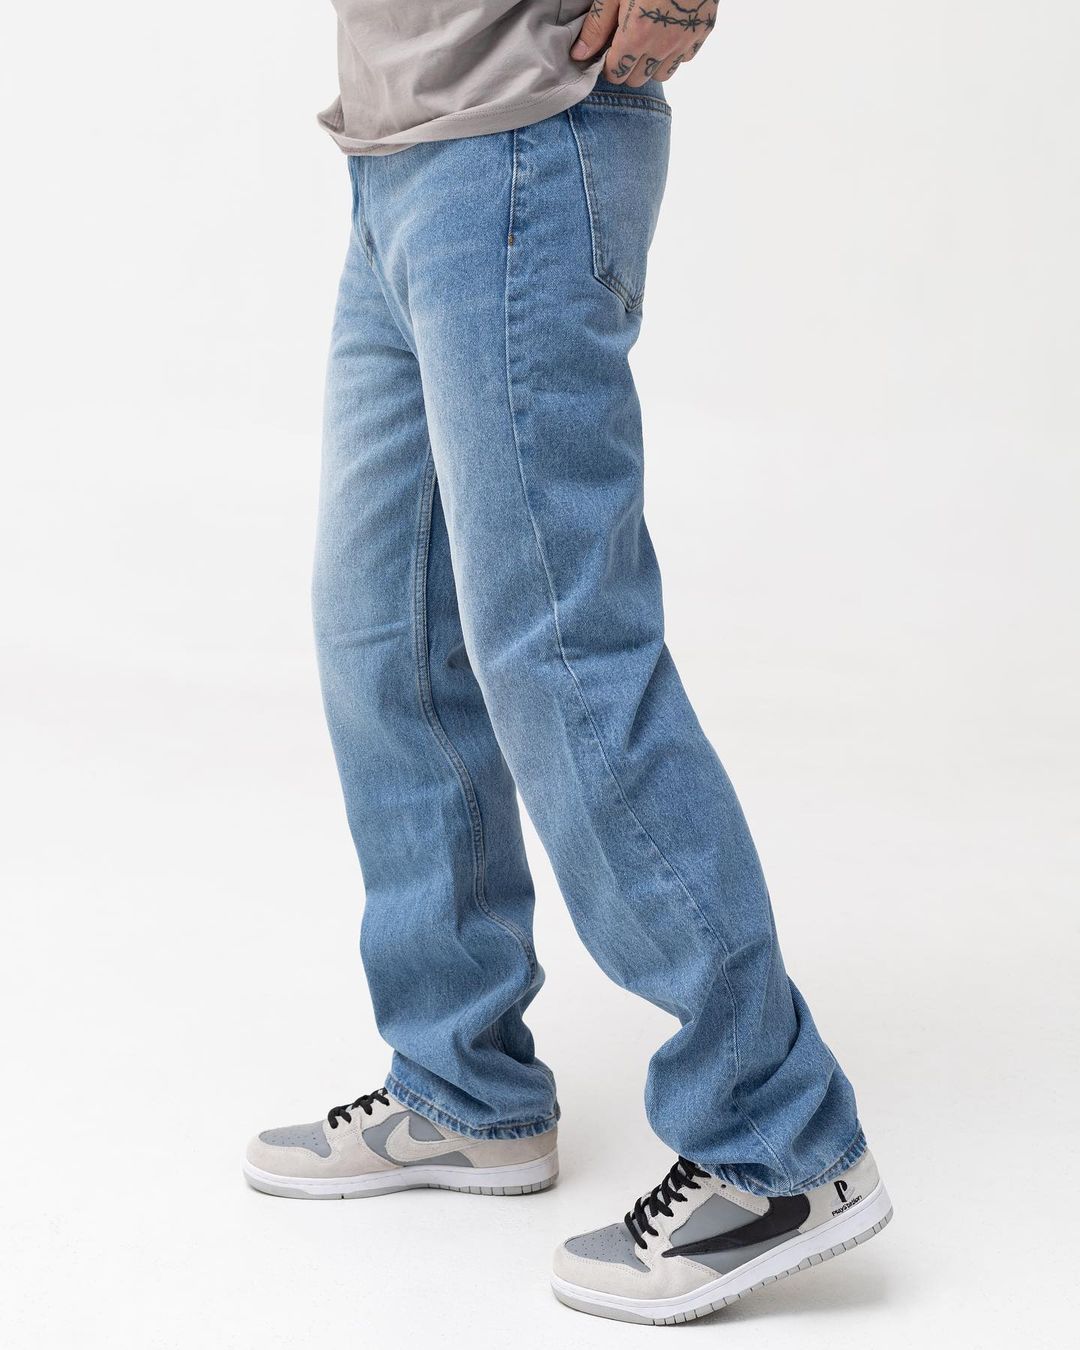 Чоловічі сині джинси BEZET базові Washed - Фото 1